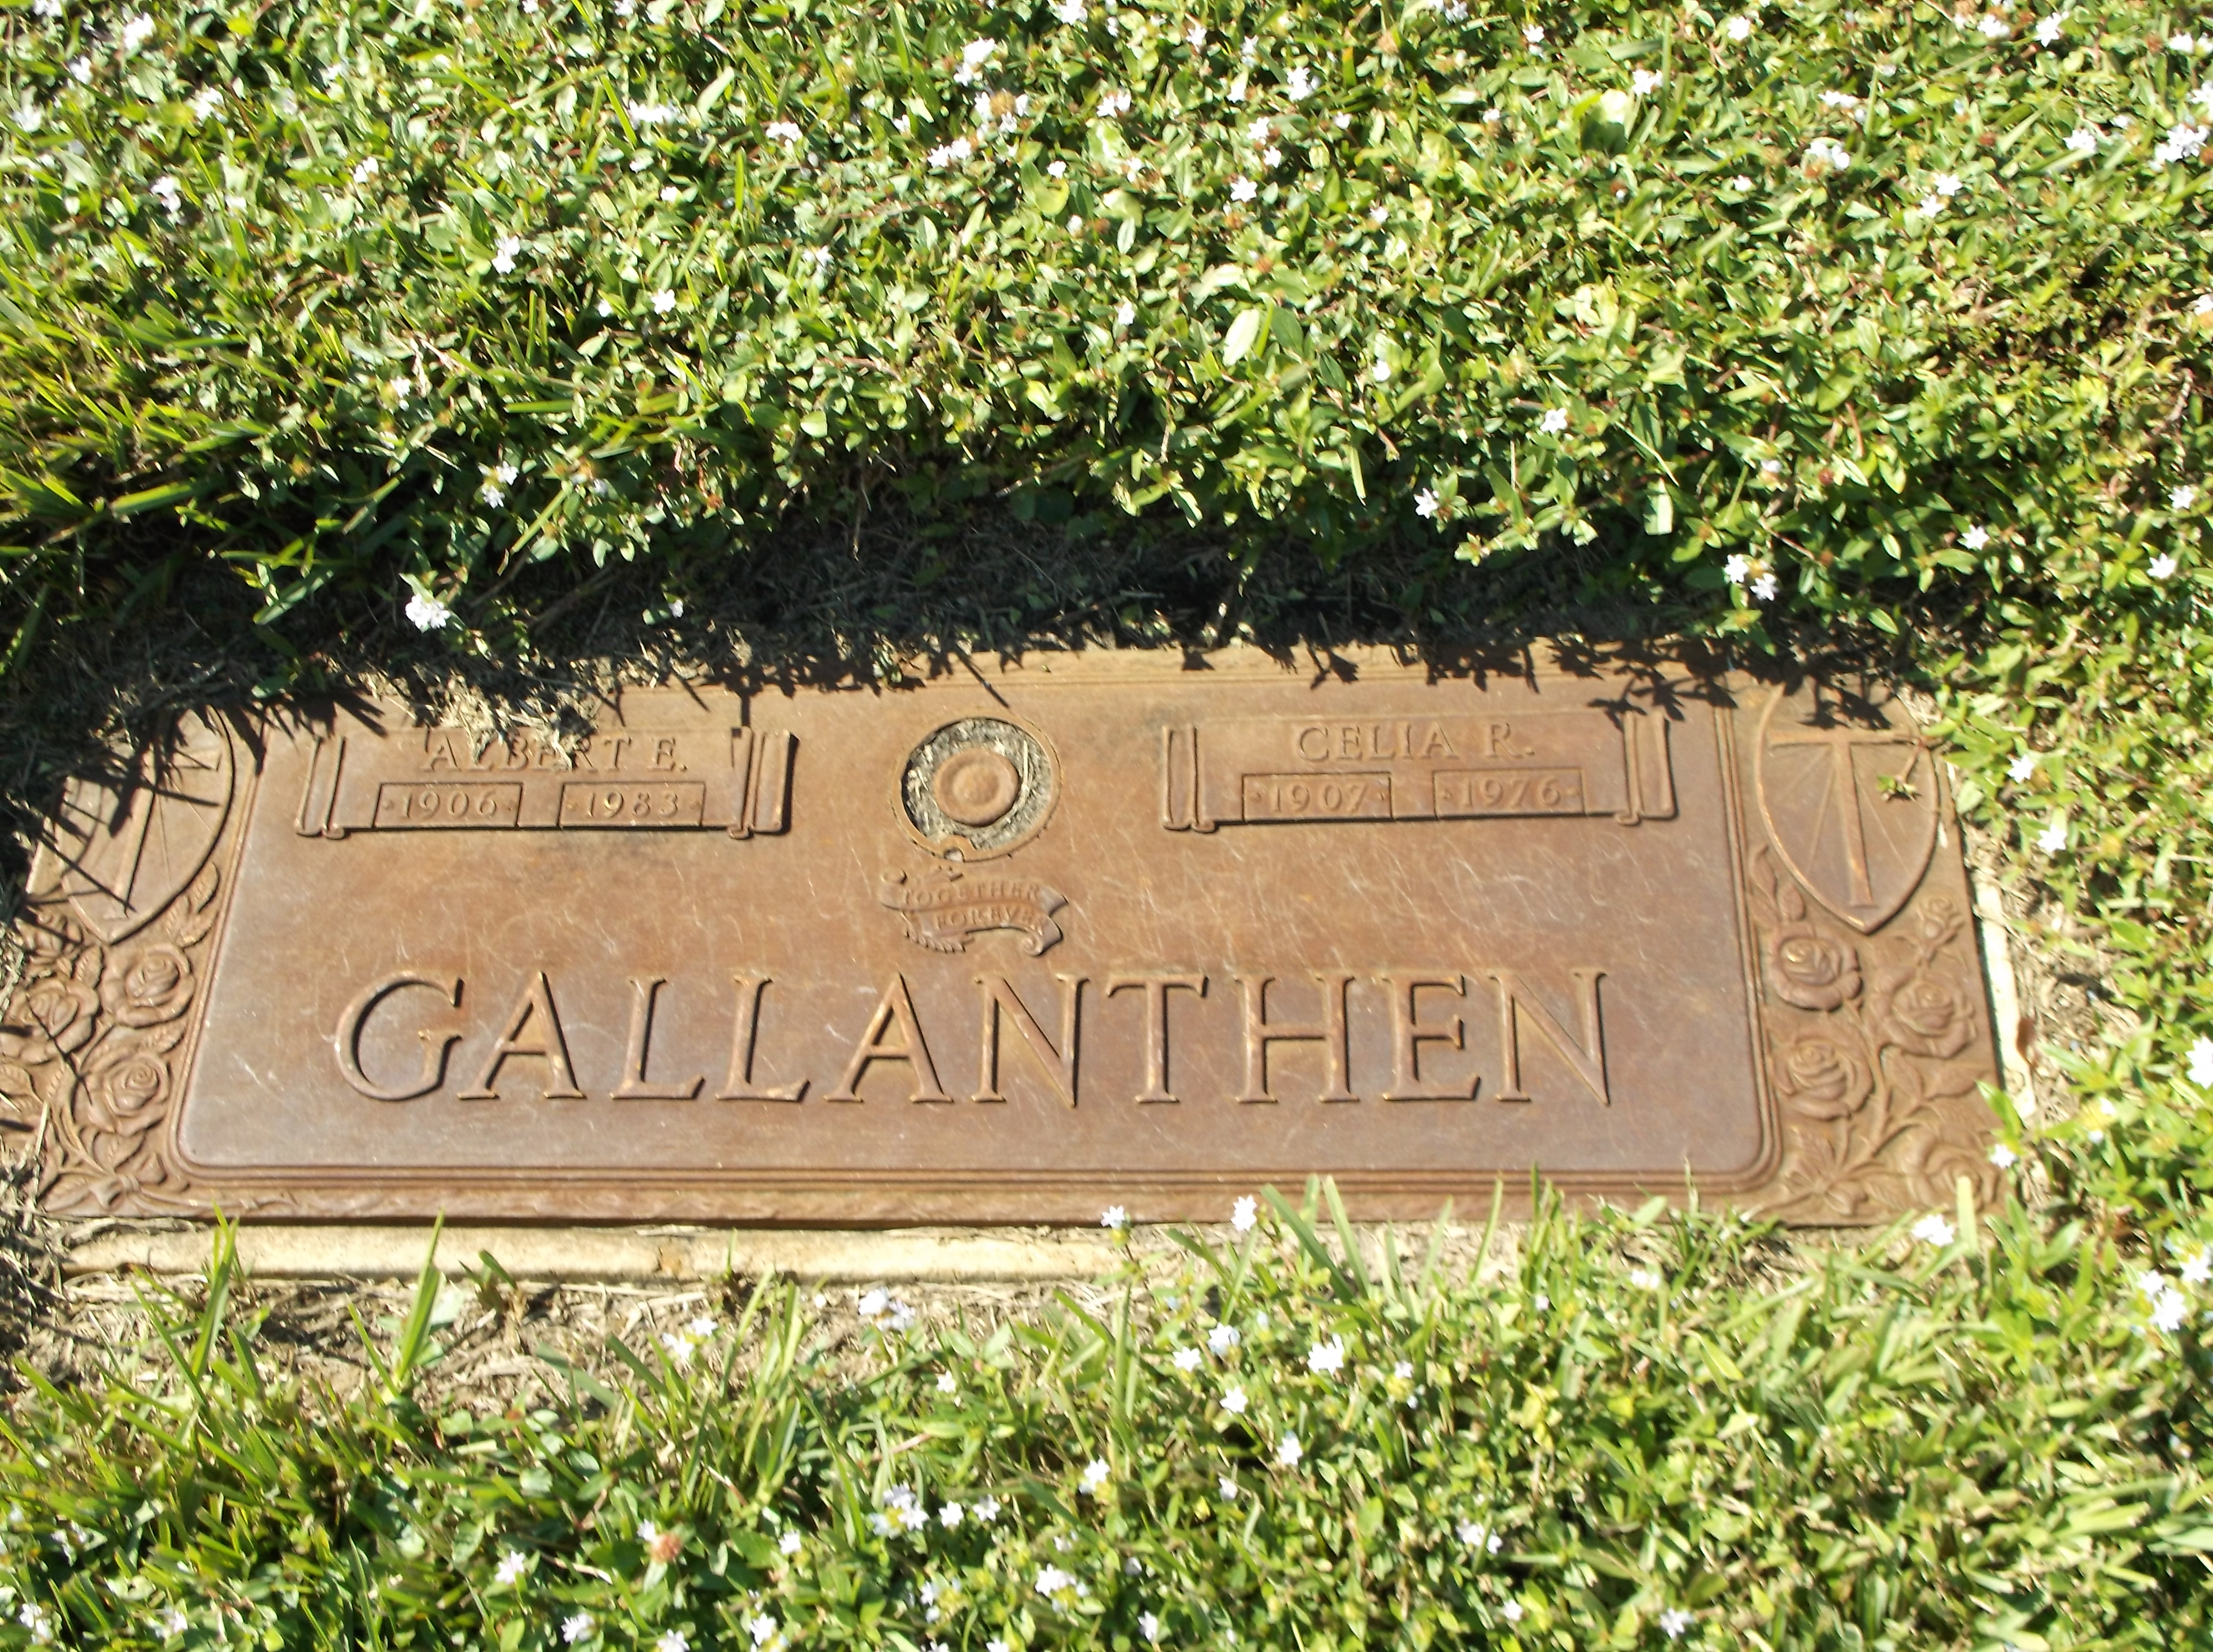 Albert E Gallanthen